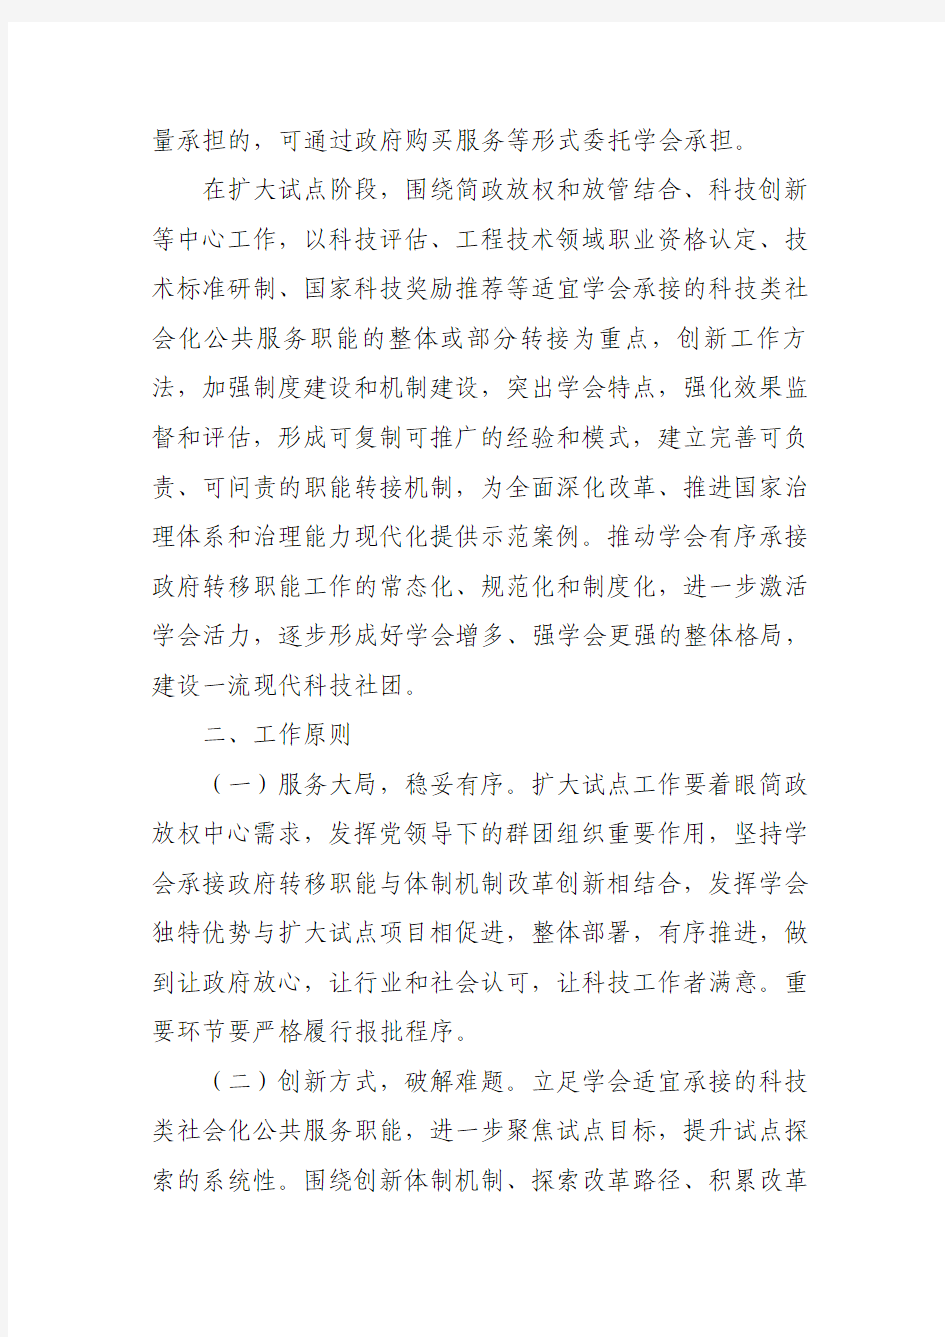 《中国科协所属学会有序承接政府转移职能扩大试点工作实施方案》